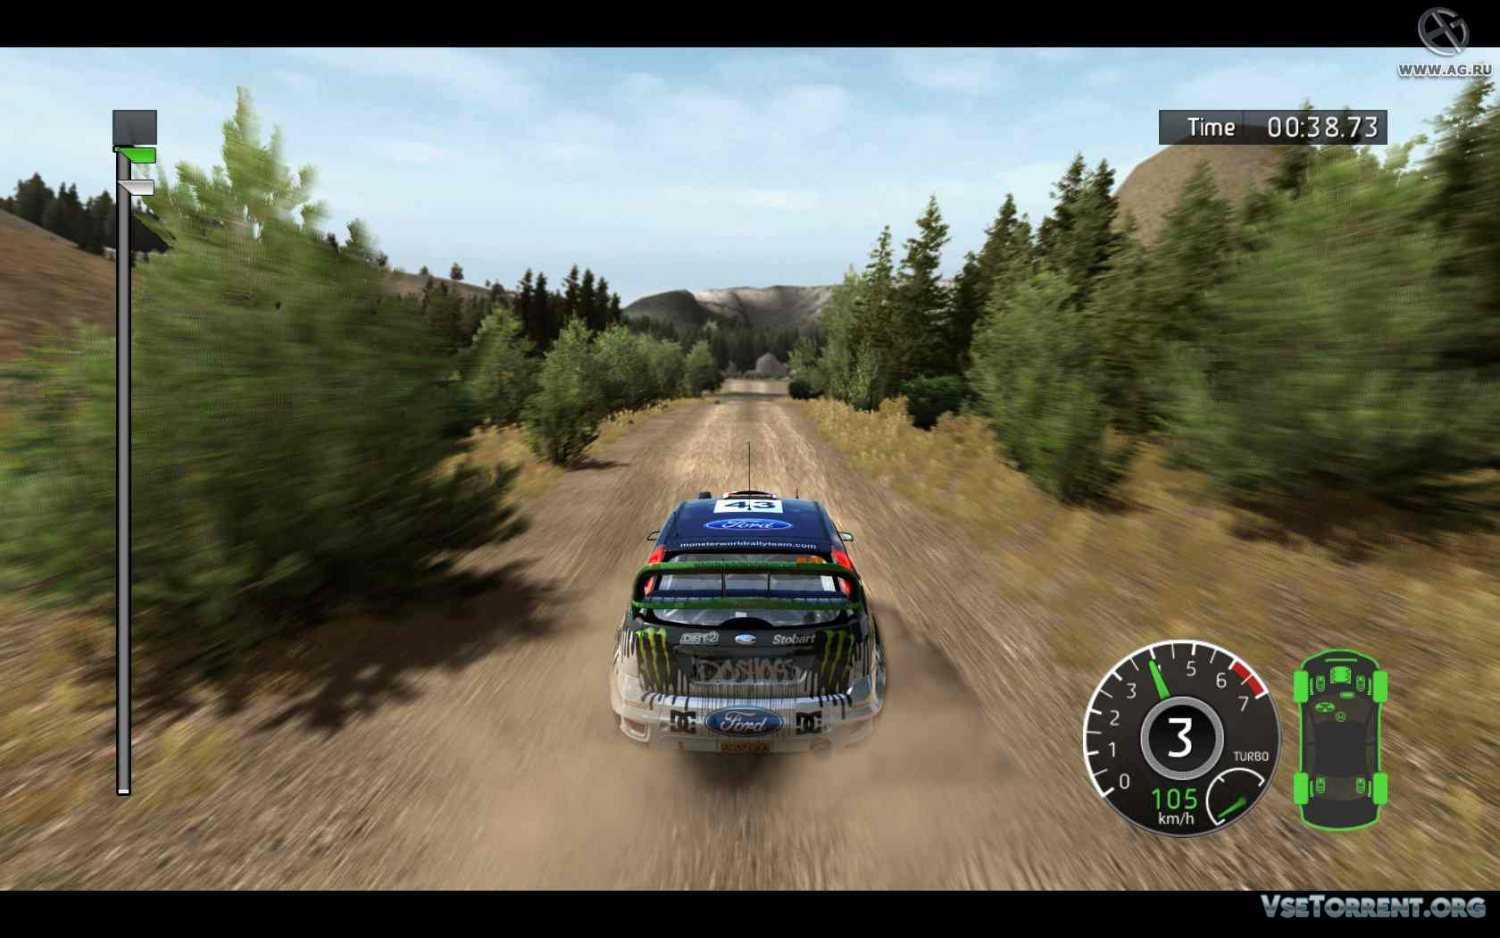 Бесплатная игра ралли. WRC FIA World Rally Championship 2010. WRC 1 FIA World Rally Championship. World Rally Championship 2010 PC. WRC Rally игра.